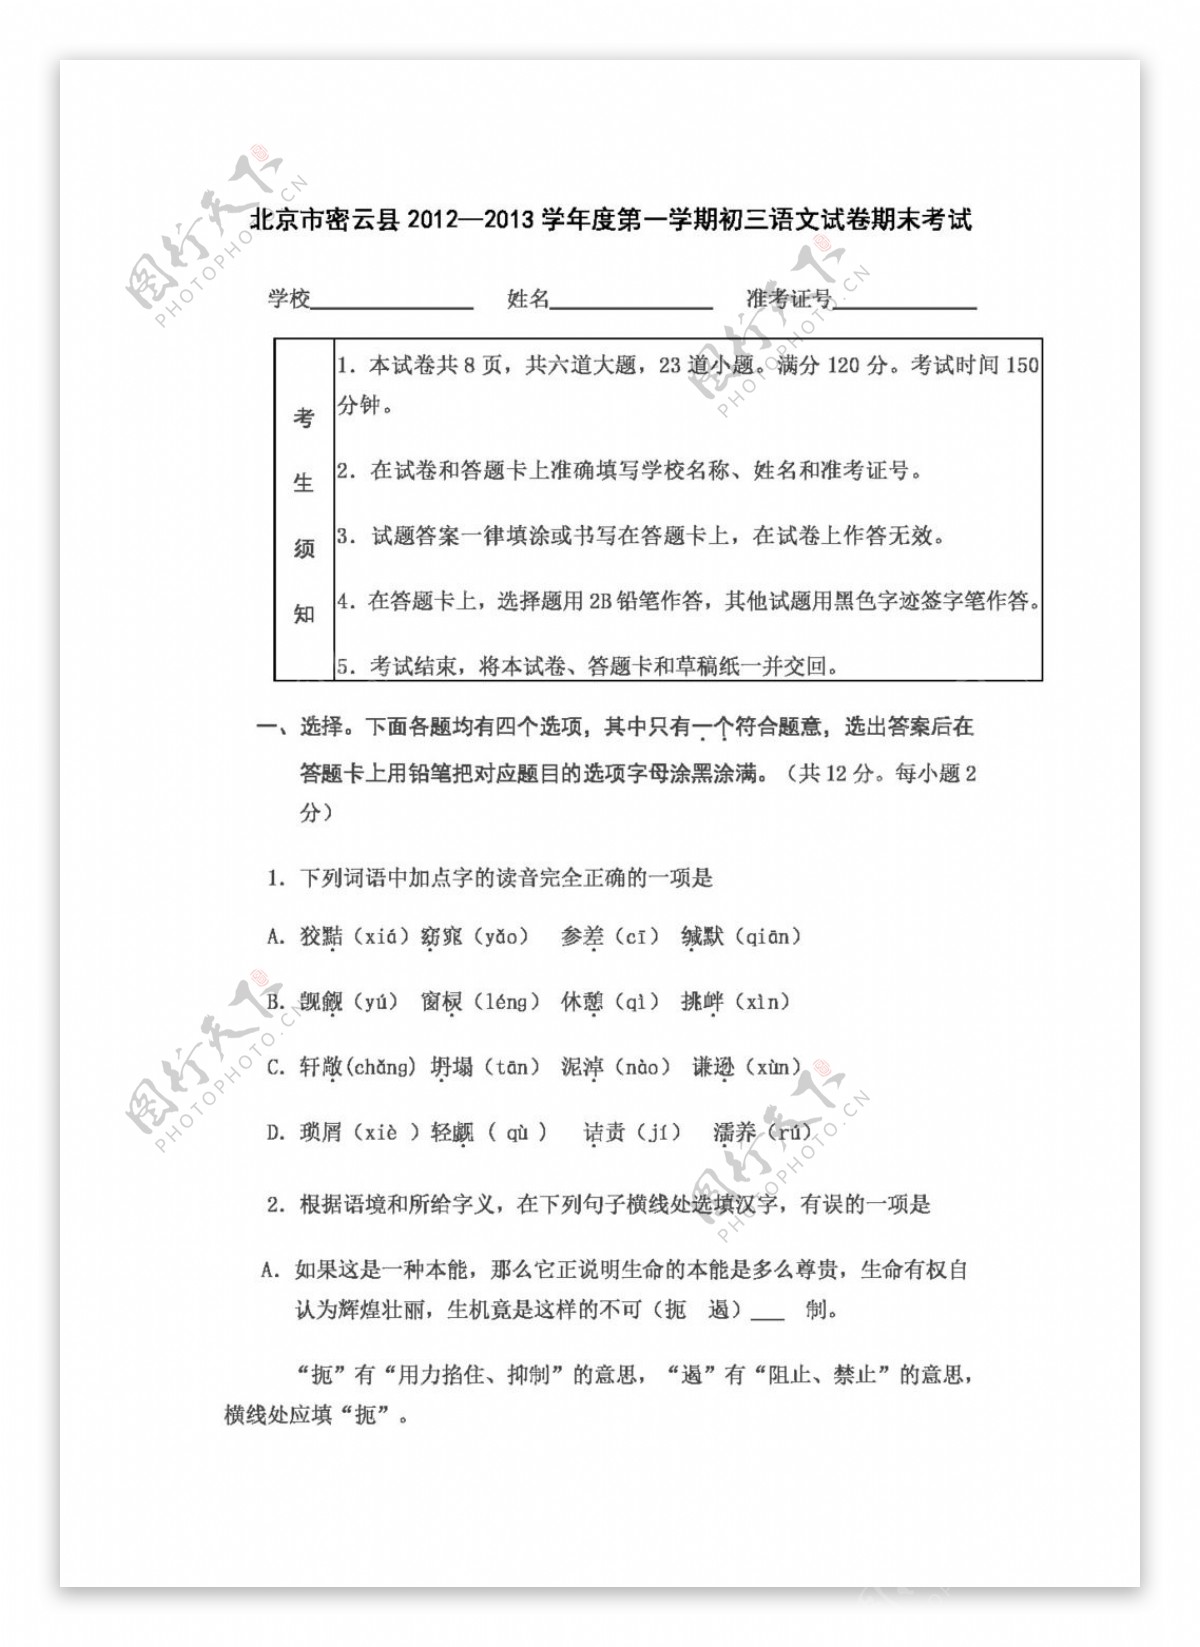 语文人教版北京市密云县第一学期初三语文试卷期末考试